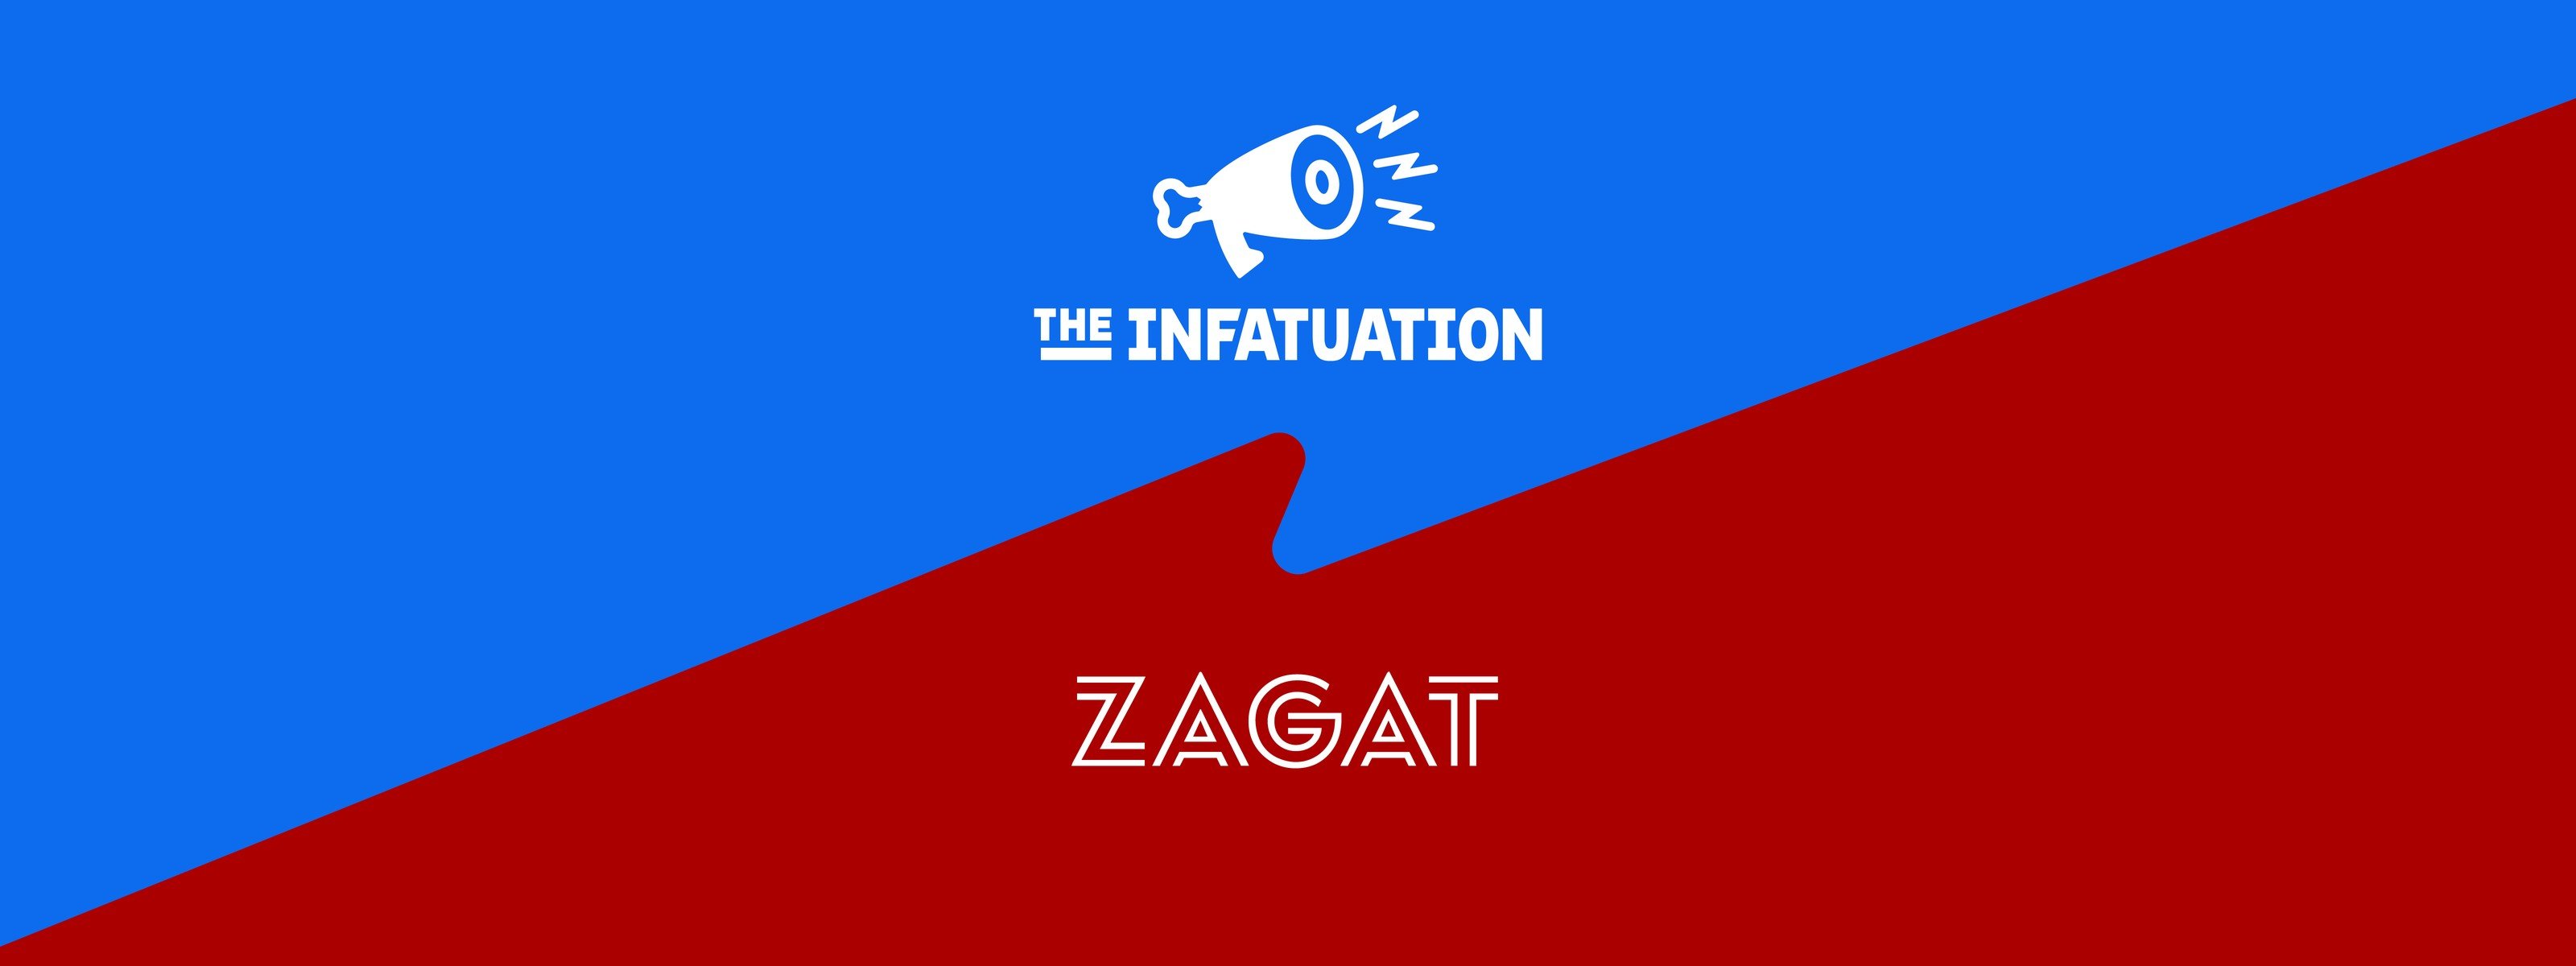 alt="Zagat x The Infatuation"